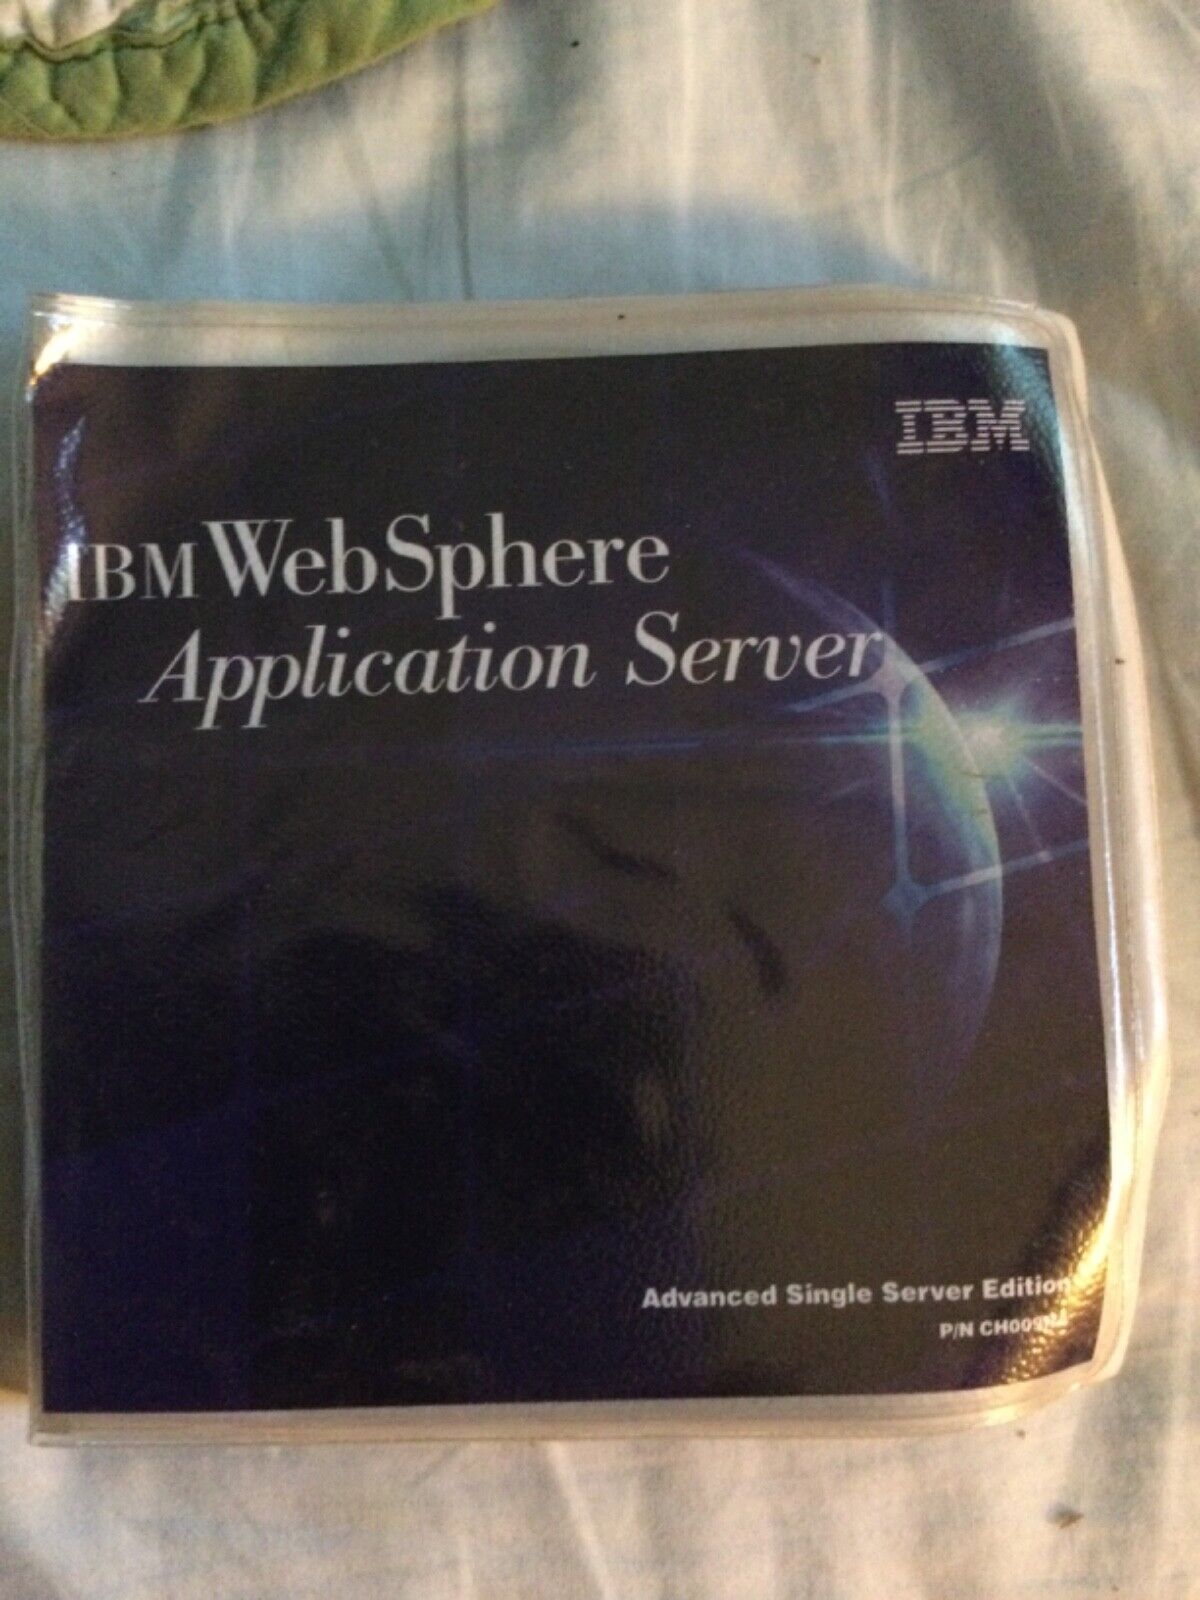 IBM WebSphere Application Server cds